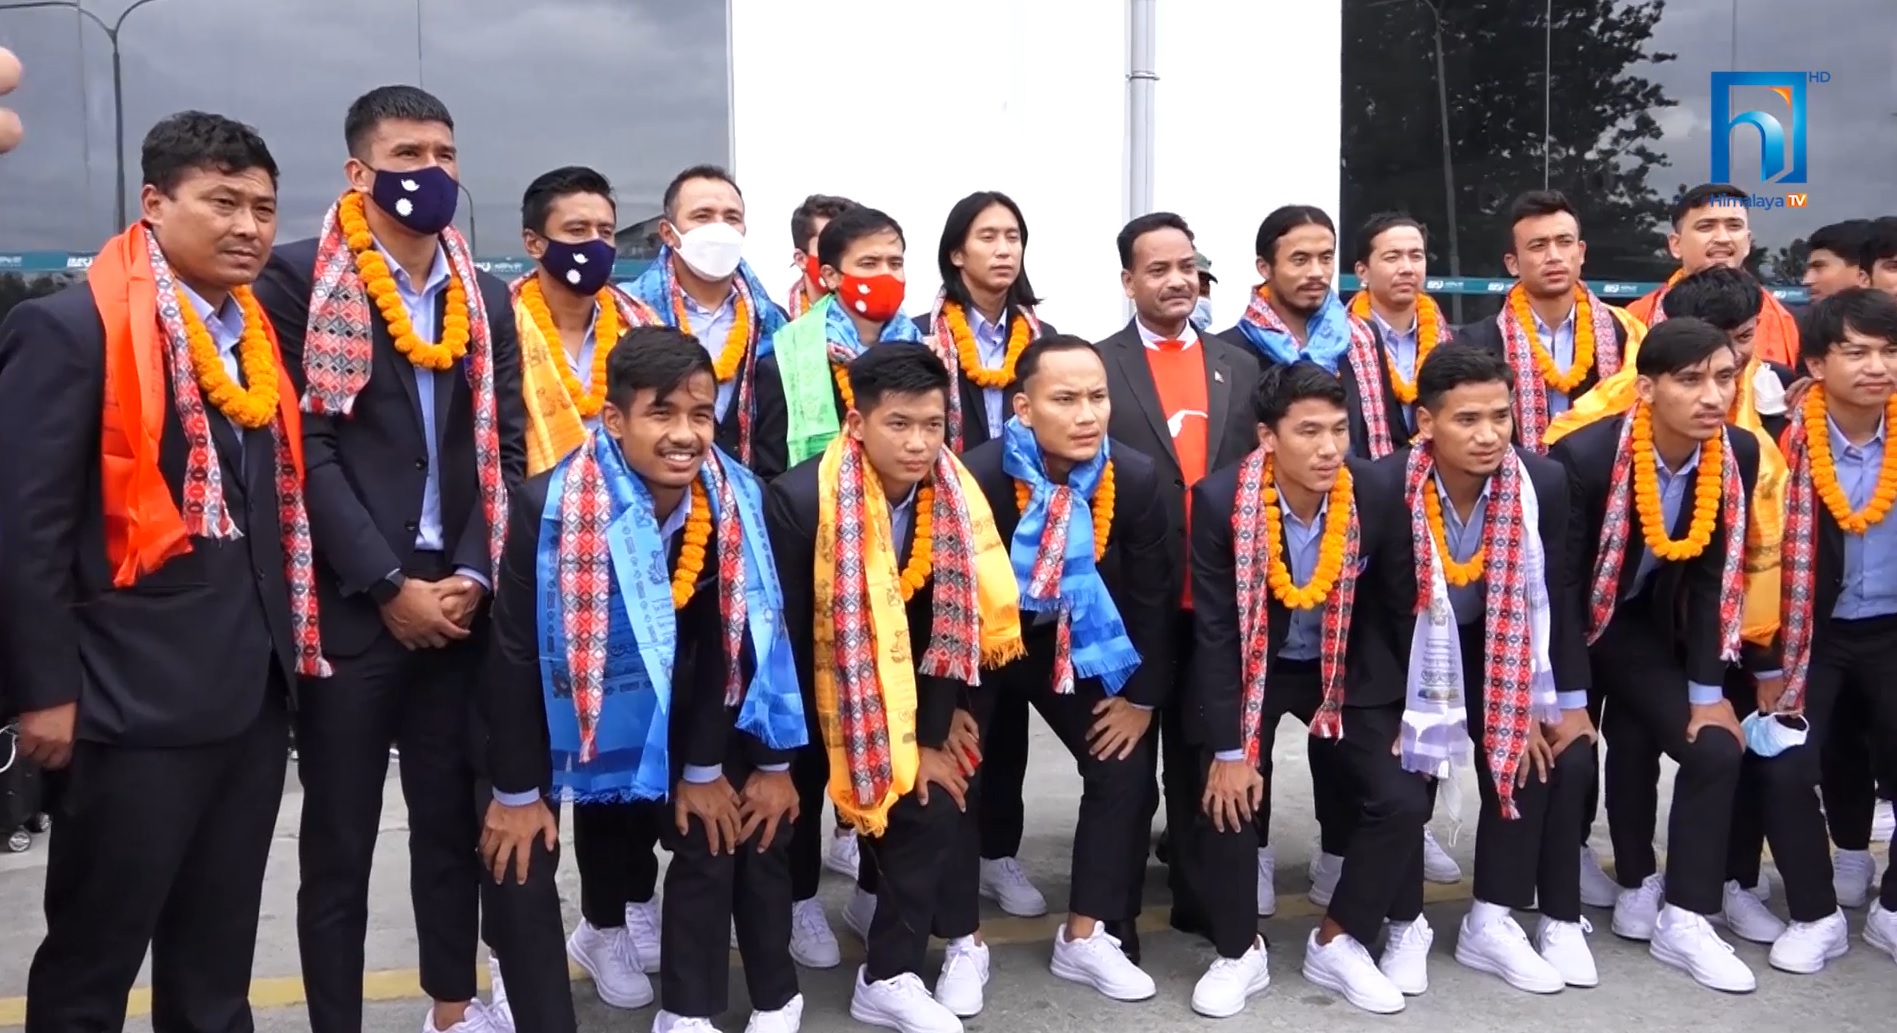 साफ उपविजेता नेपाली फुटबल टोली स्वदेश फिर्ता, विमानस्थलमा भव्य स्वागत (भिडियो रिपोर्टसहित